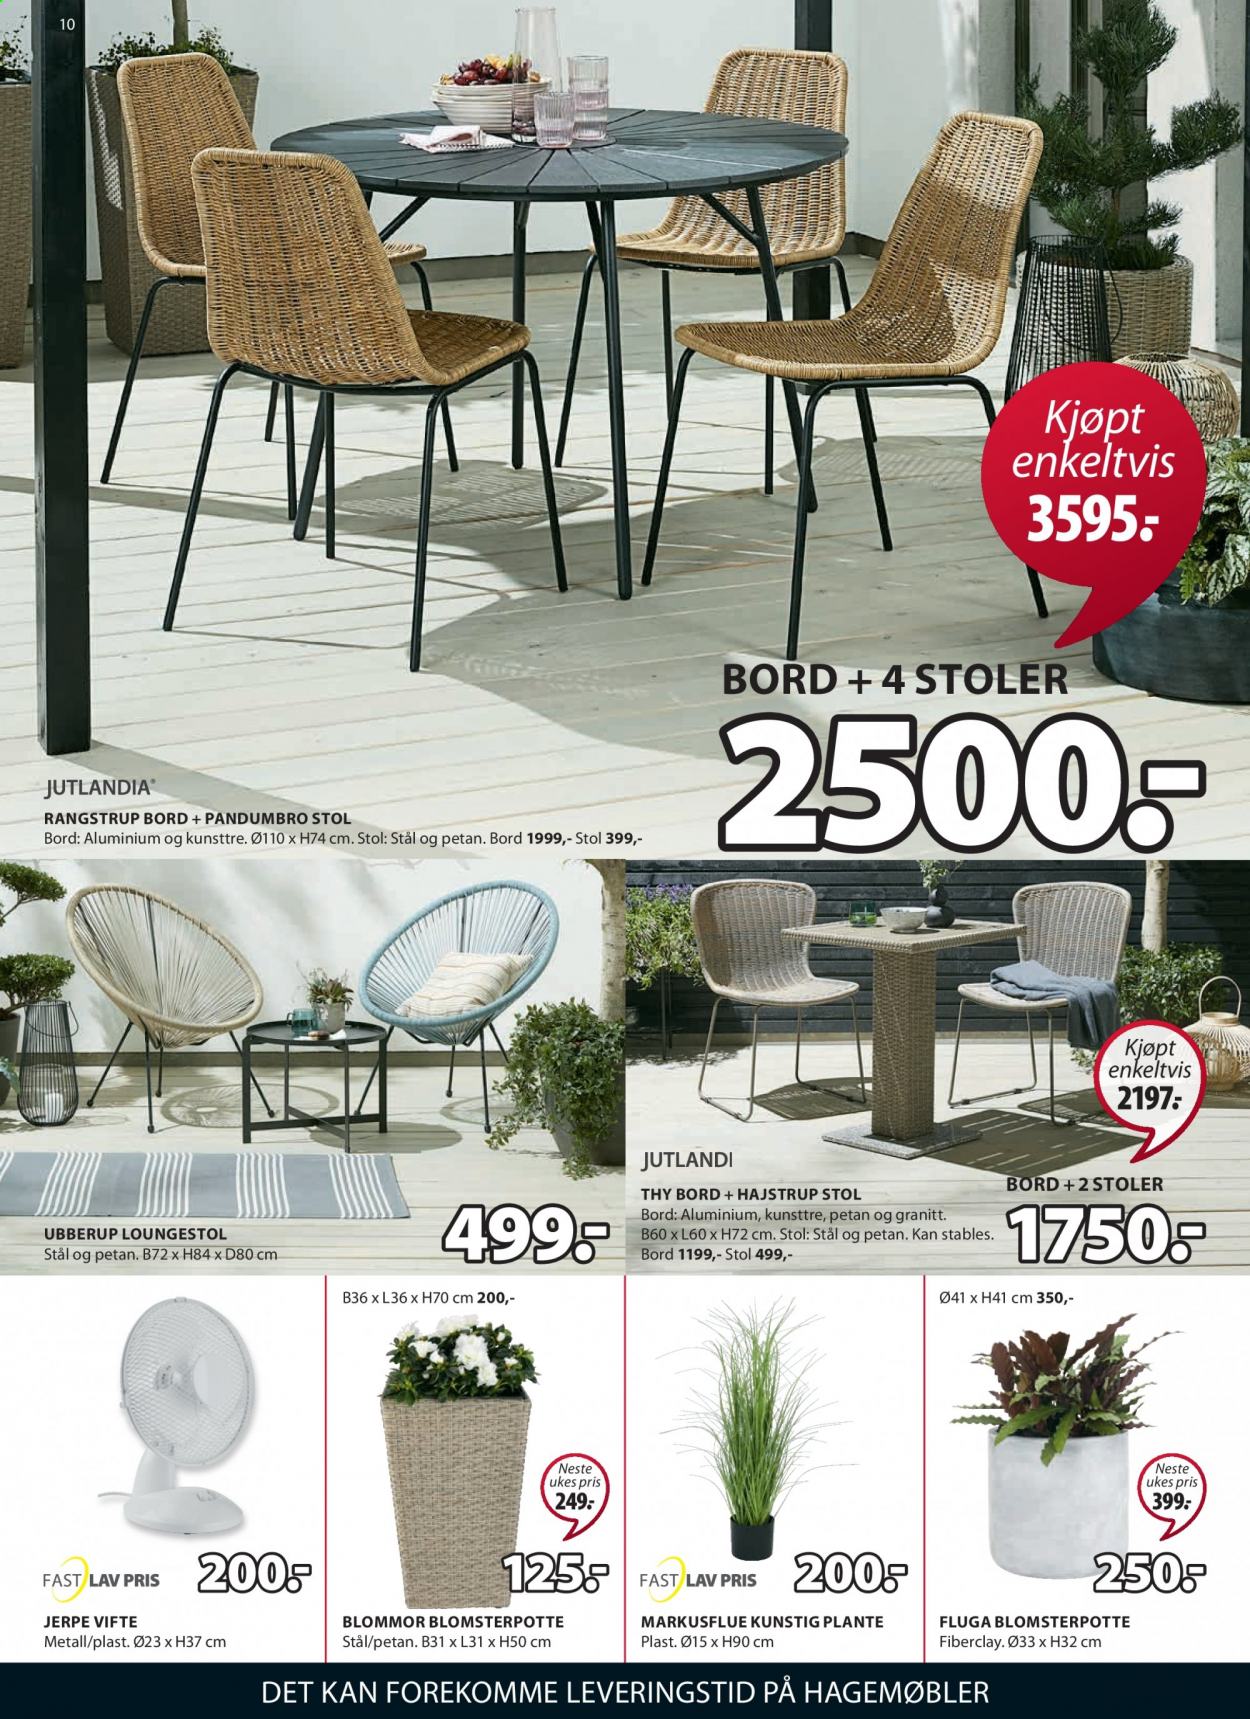 thumbnail - Kundeavis JYSK - 14.6.2021 - 19.6.2021 - Produkter fra tilbudsaviser - bord, stol, hagemøbler, loungestol. Side 10.